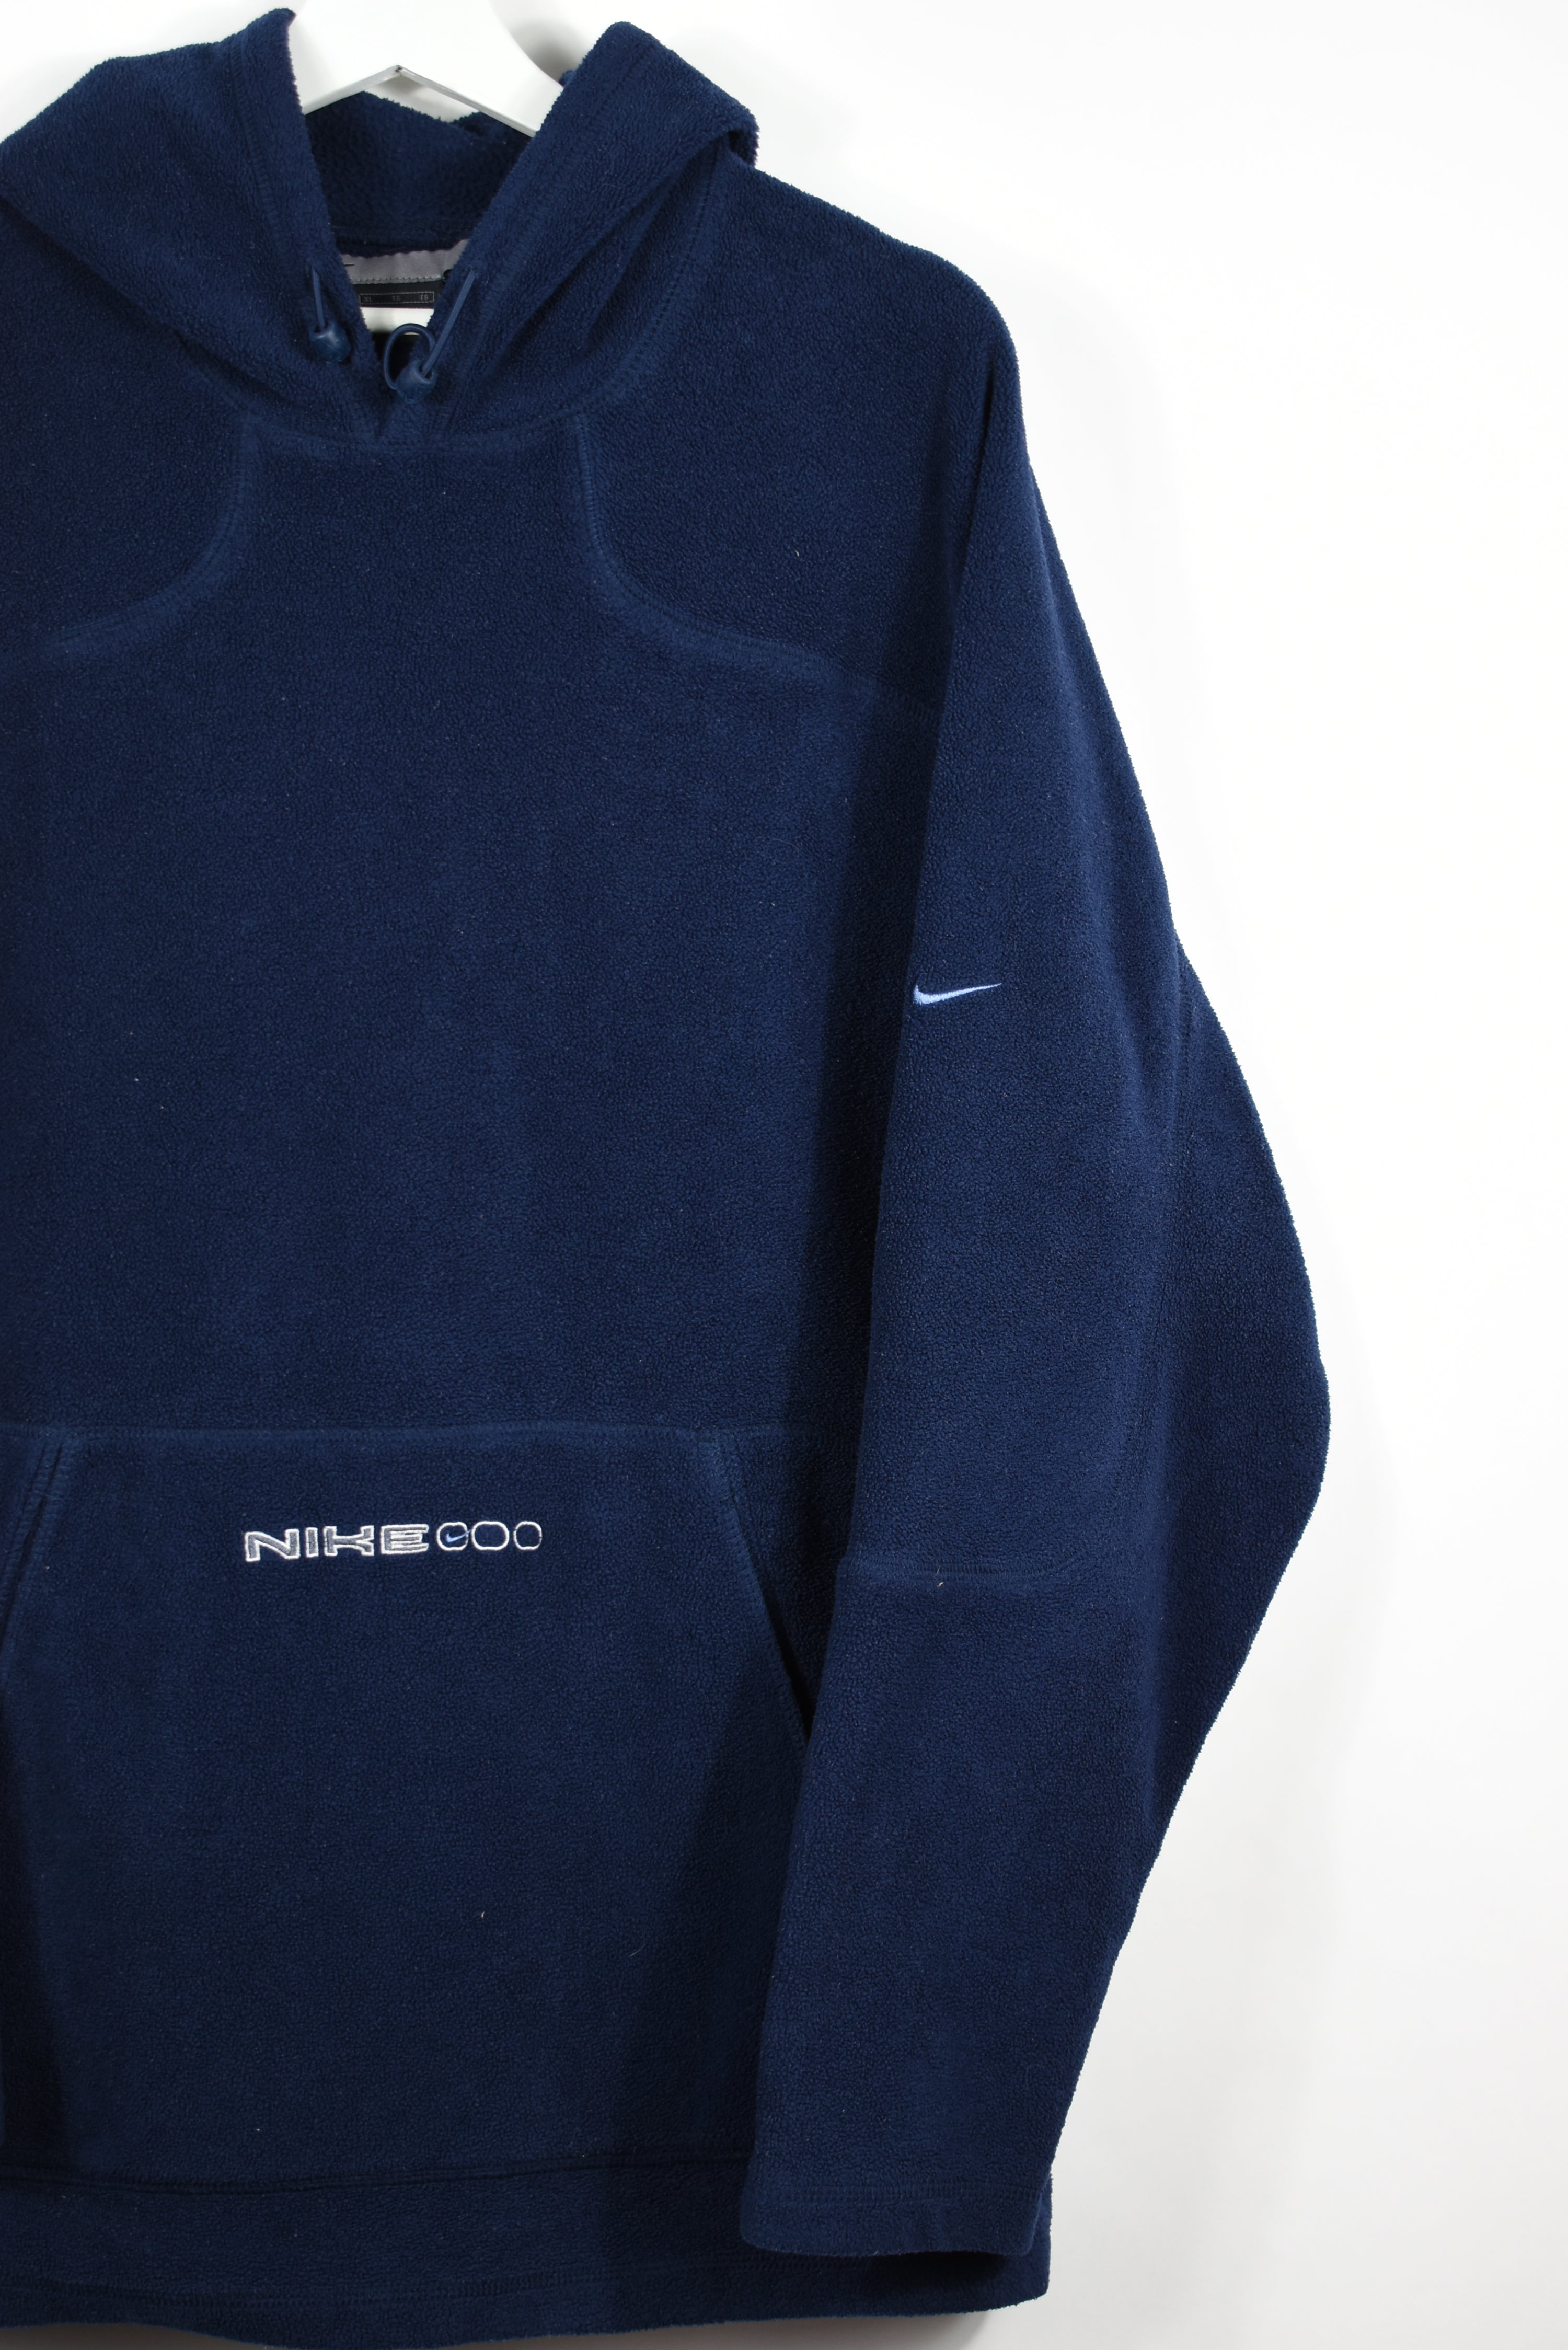 Vintage Nike Embroidered Fleece Hoodie XL - REVIVED Vintage est. 2020